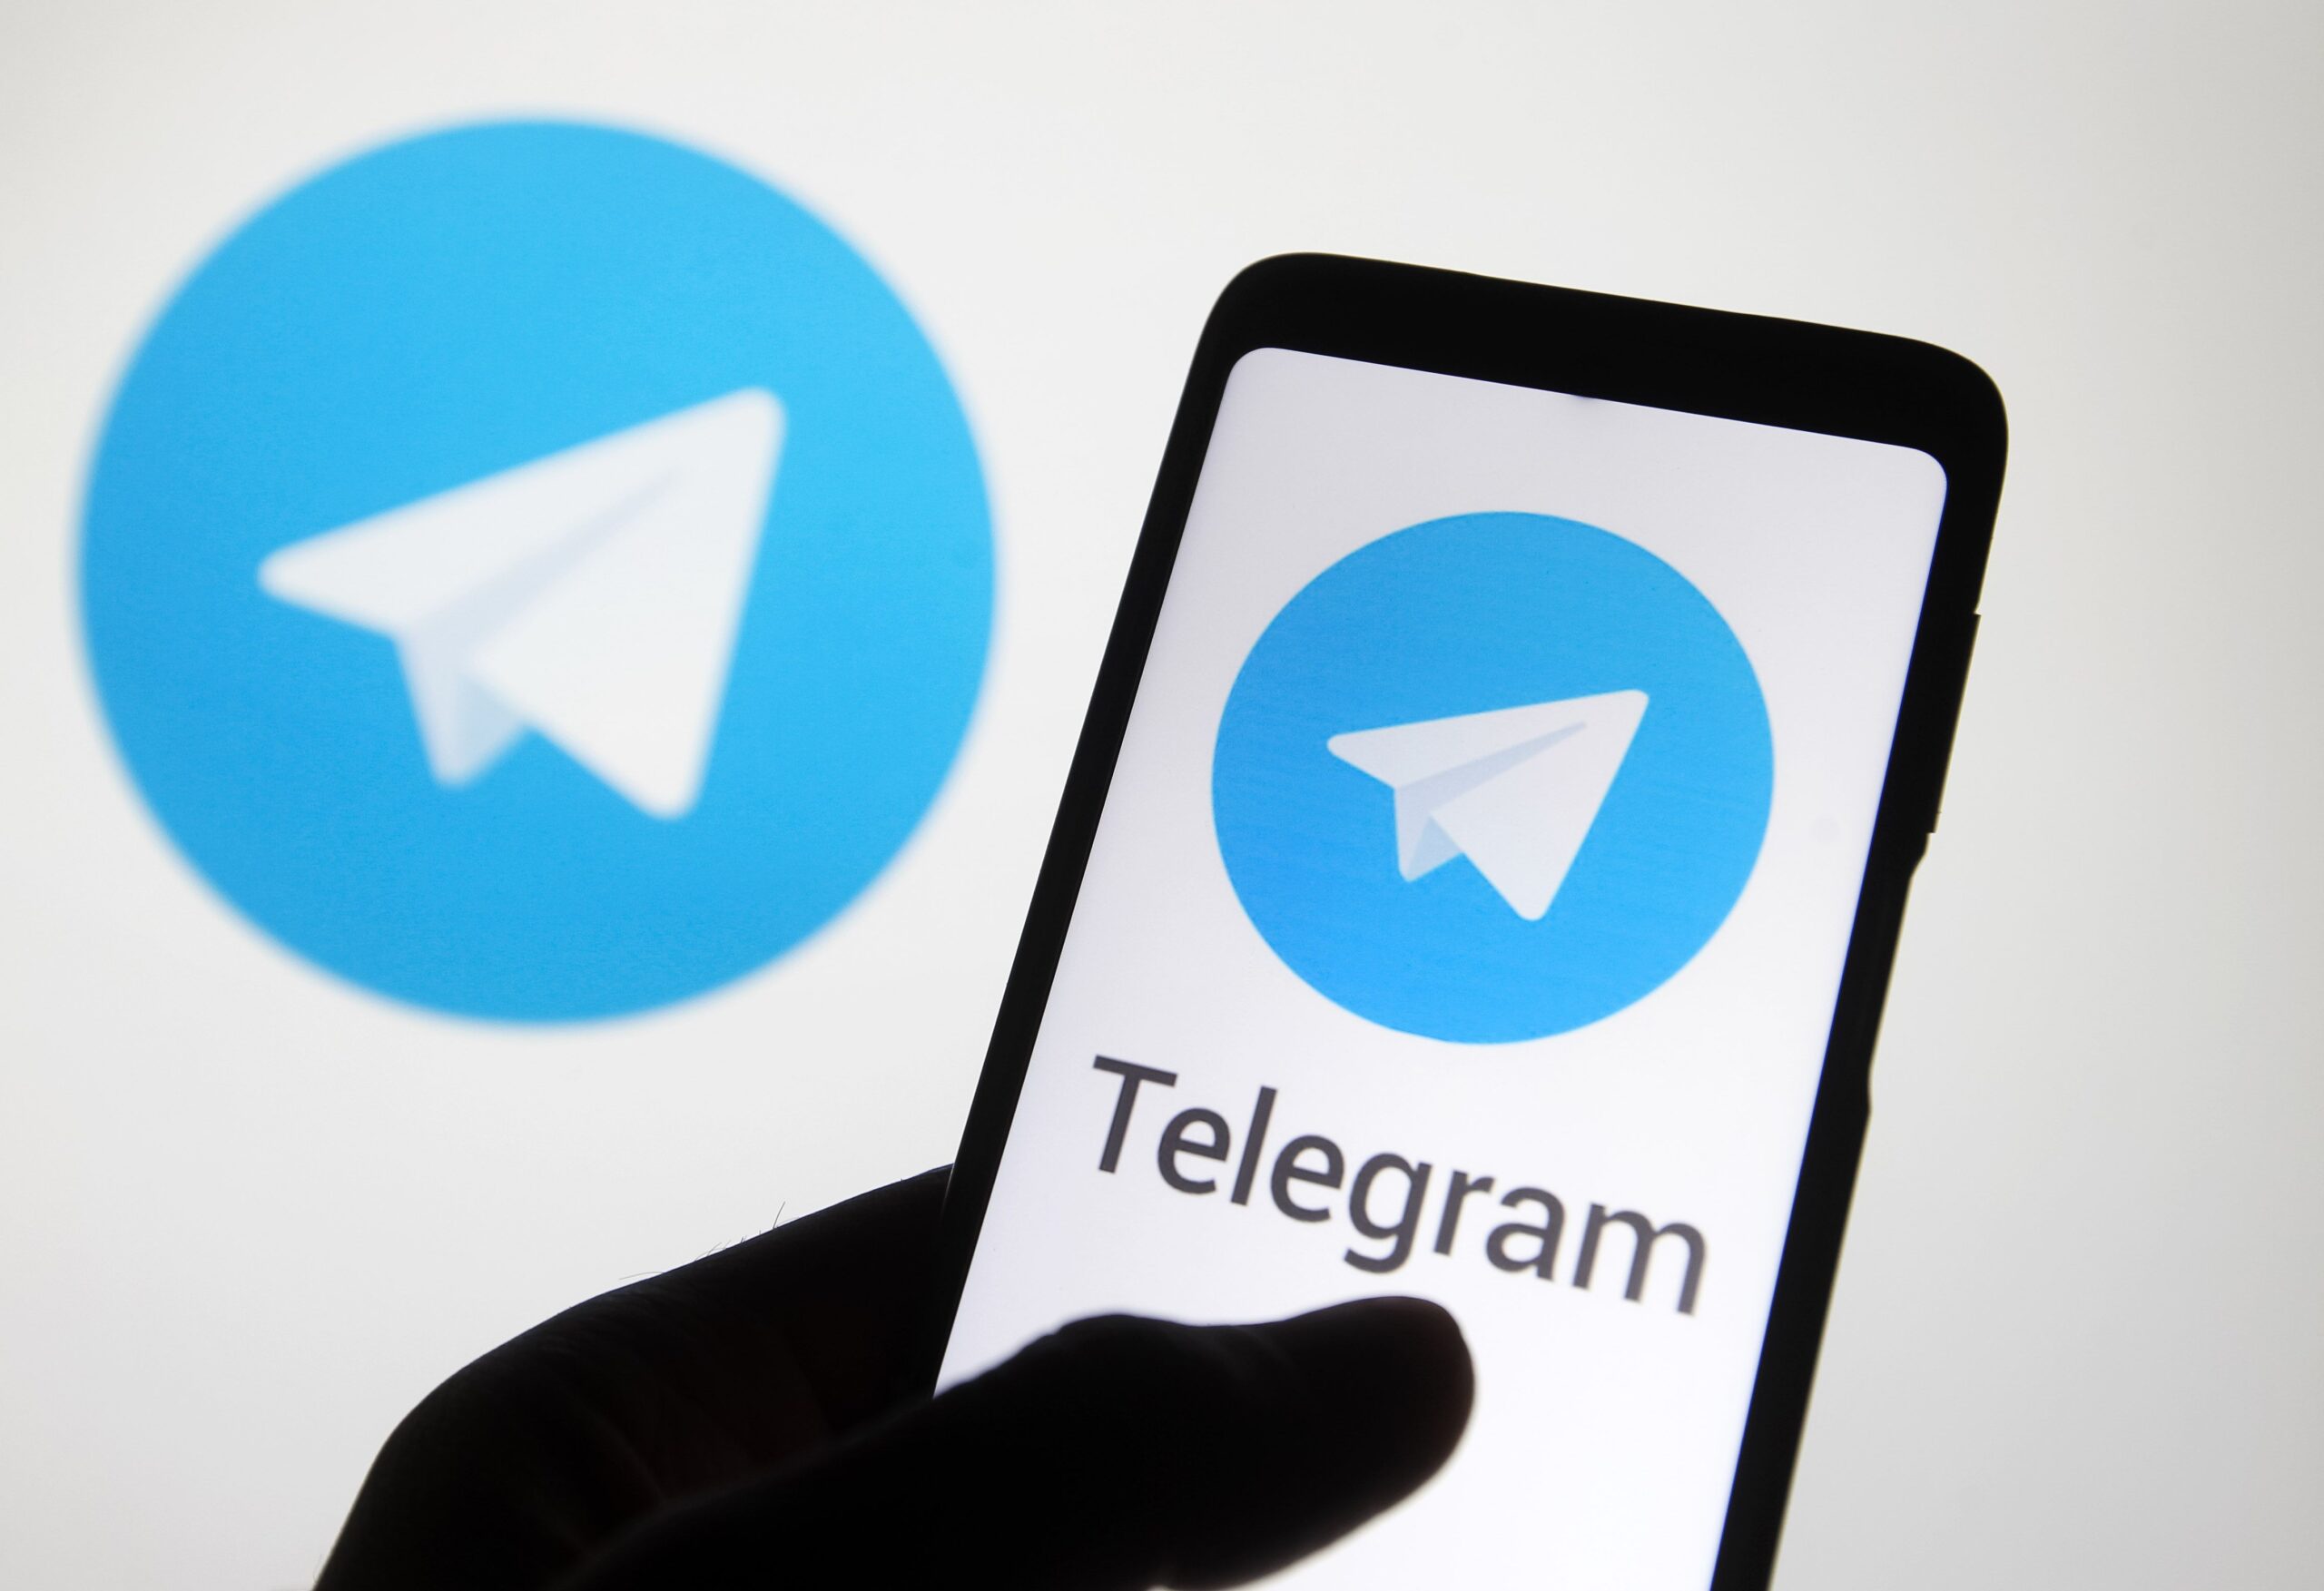 send a telegram online